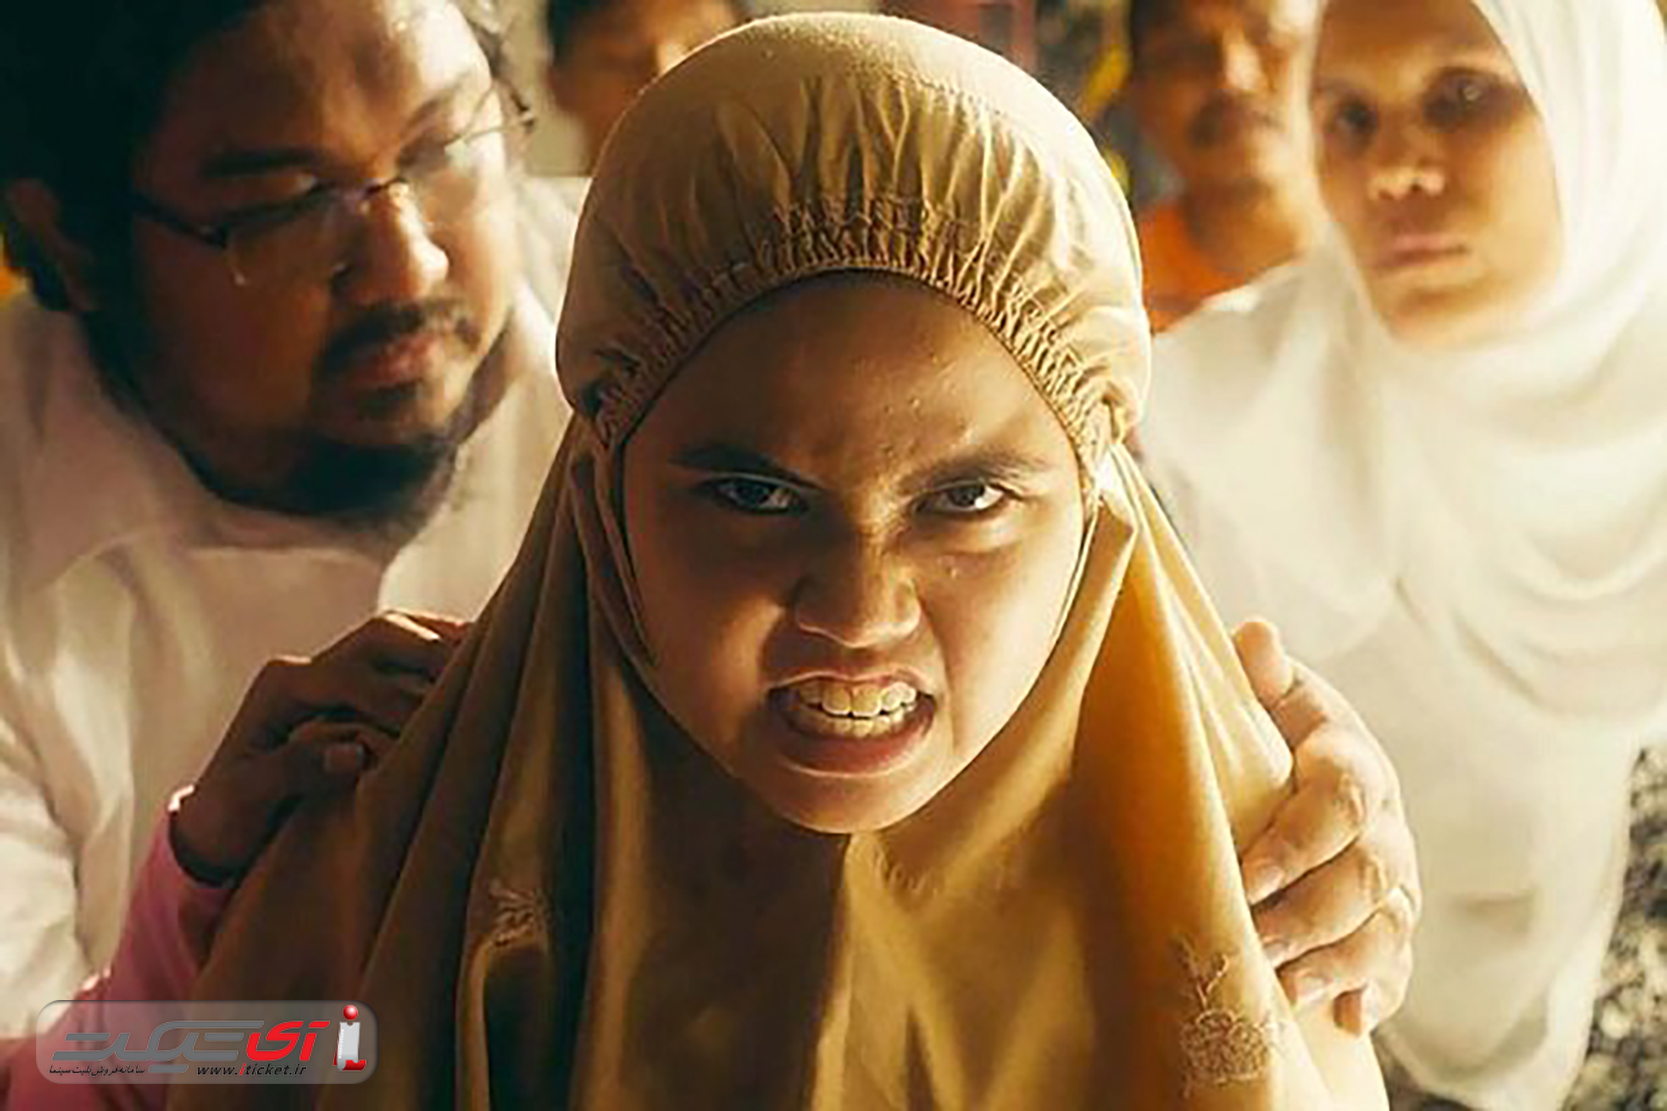 آی تیکت نیوز - اولین جایزه «کن» به یک فیلم ترسناک رسید/ توفیق برای نماینده مالزی